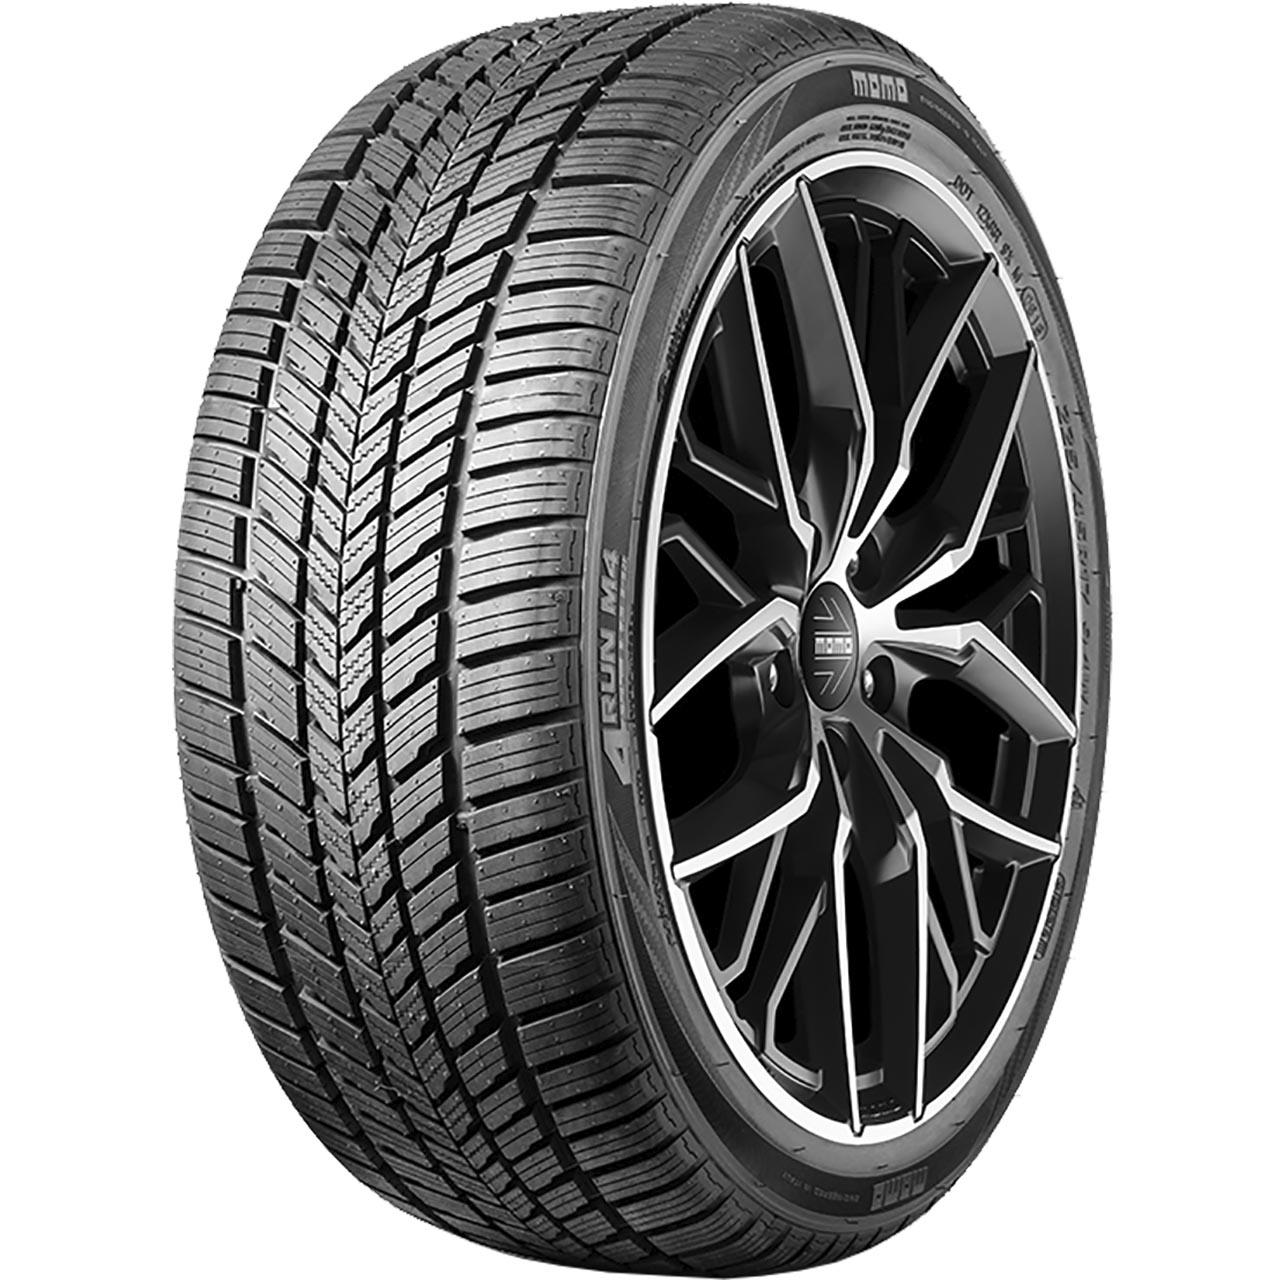 Momo Tire M 4 Four Season 215/55R18 99V XL